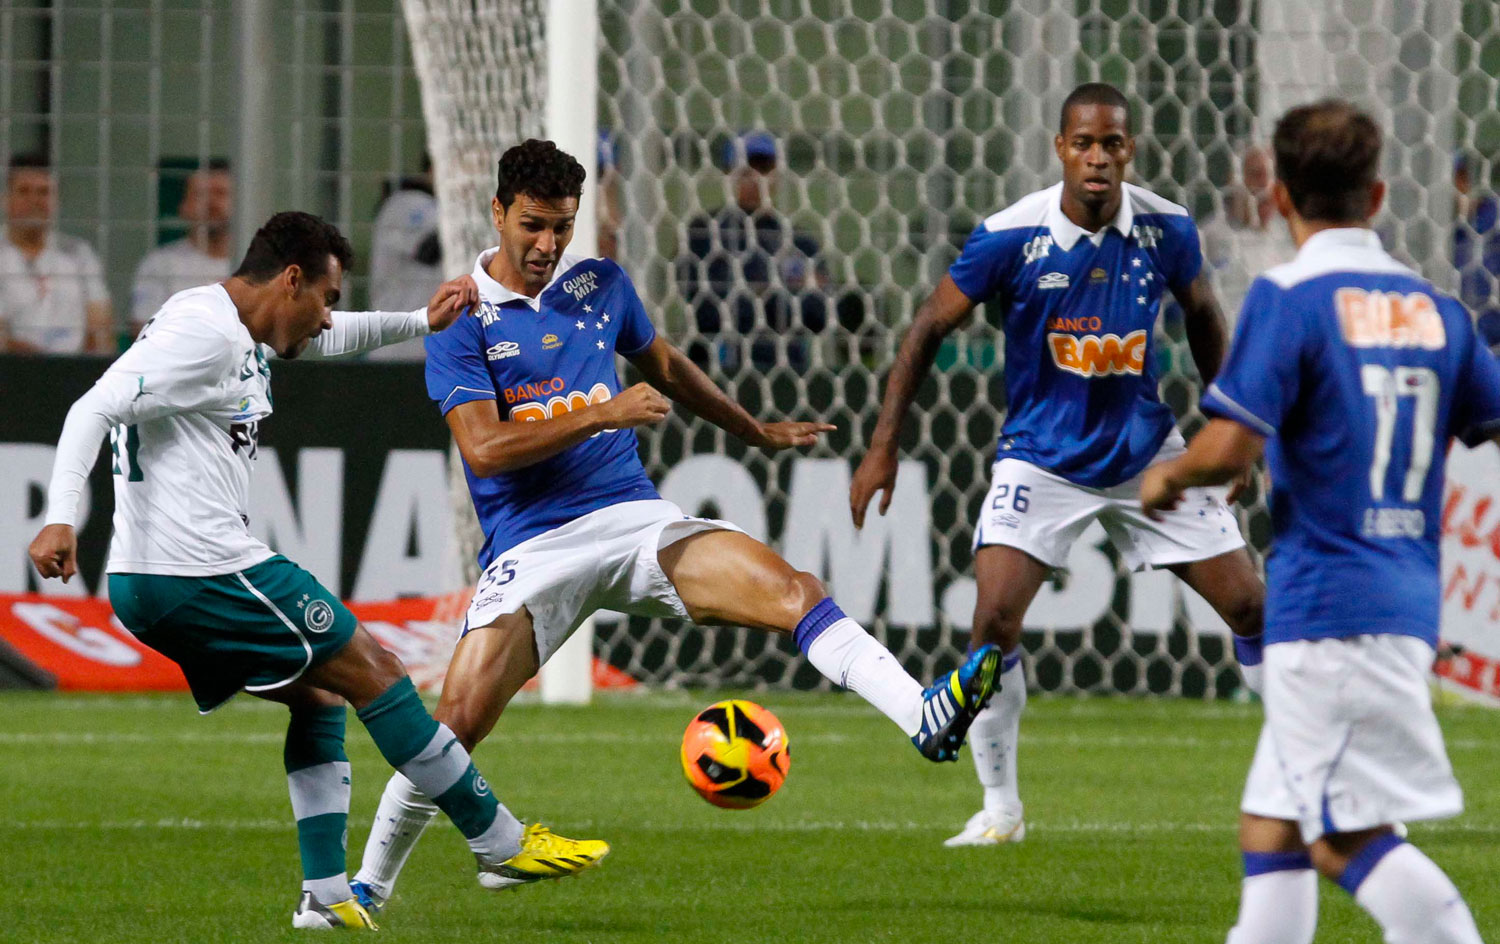 Resultado de imagem para Cruzeiro 5x0 Goias 2013